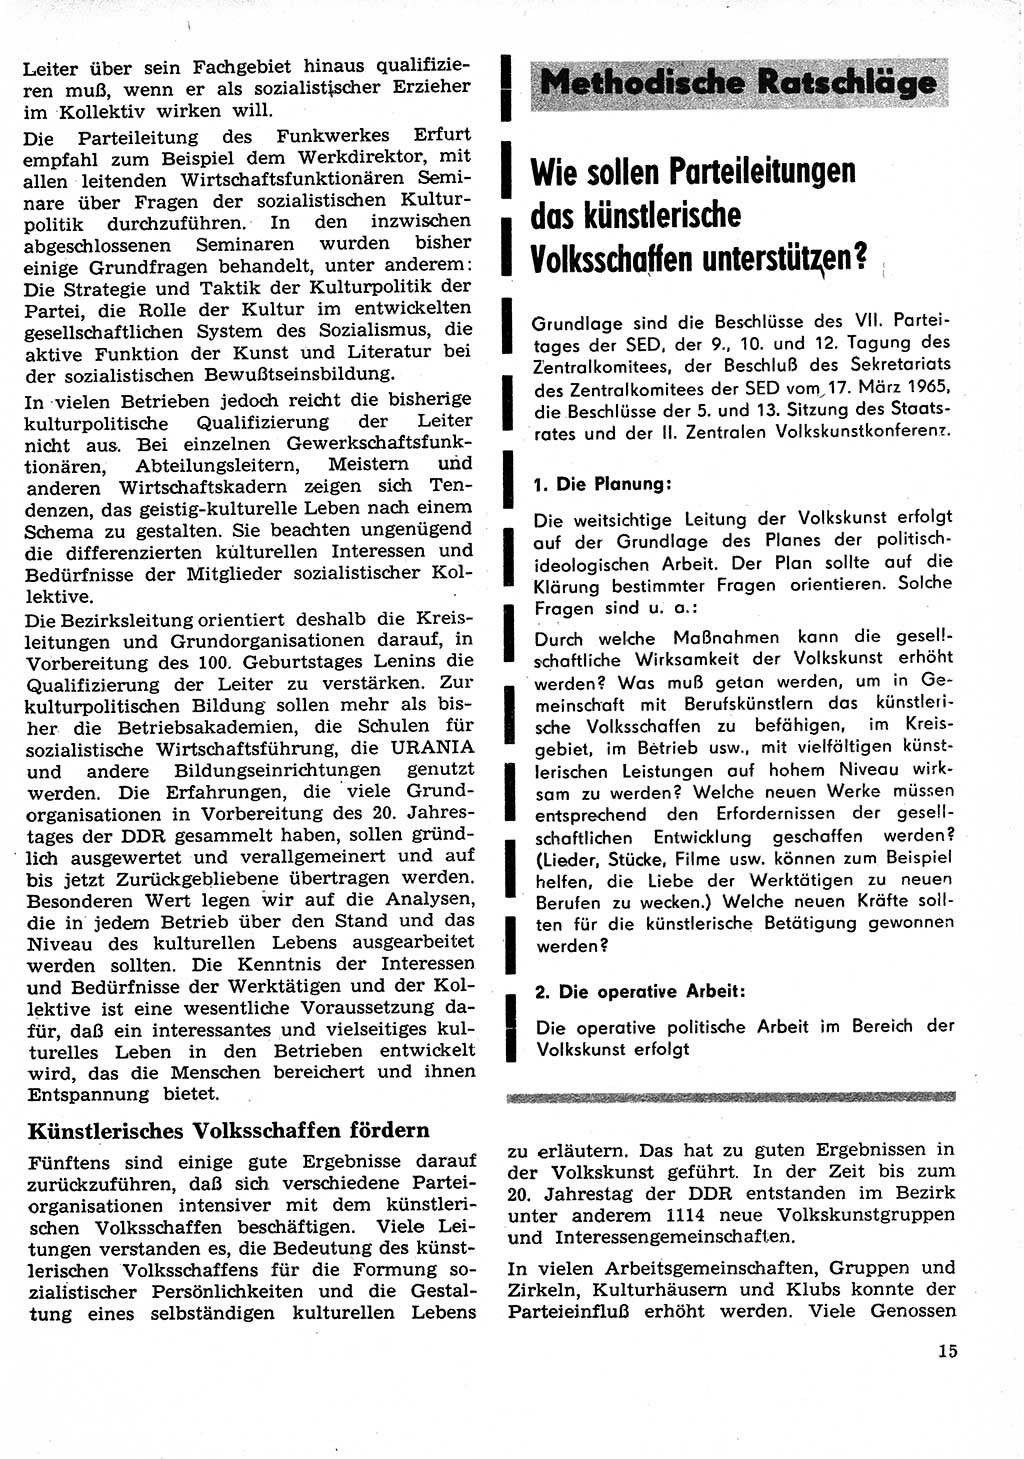 Neuer Weg (NW), Organ des Zentralkomitees (ZK) der SED (Sozialistische Einheitspartei Deutschlands) für Fragen des Parteilebens, 25. Jahrgang [Deutsche Demokratische Republik (DDR)] 1970, Seite 15 (NW ZK SED DDR 1970, S. 15)